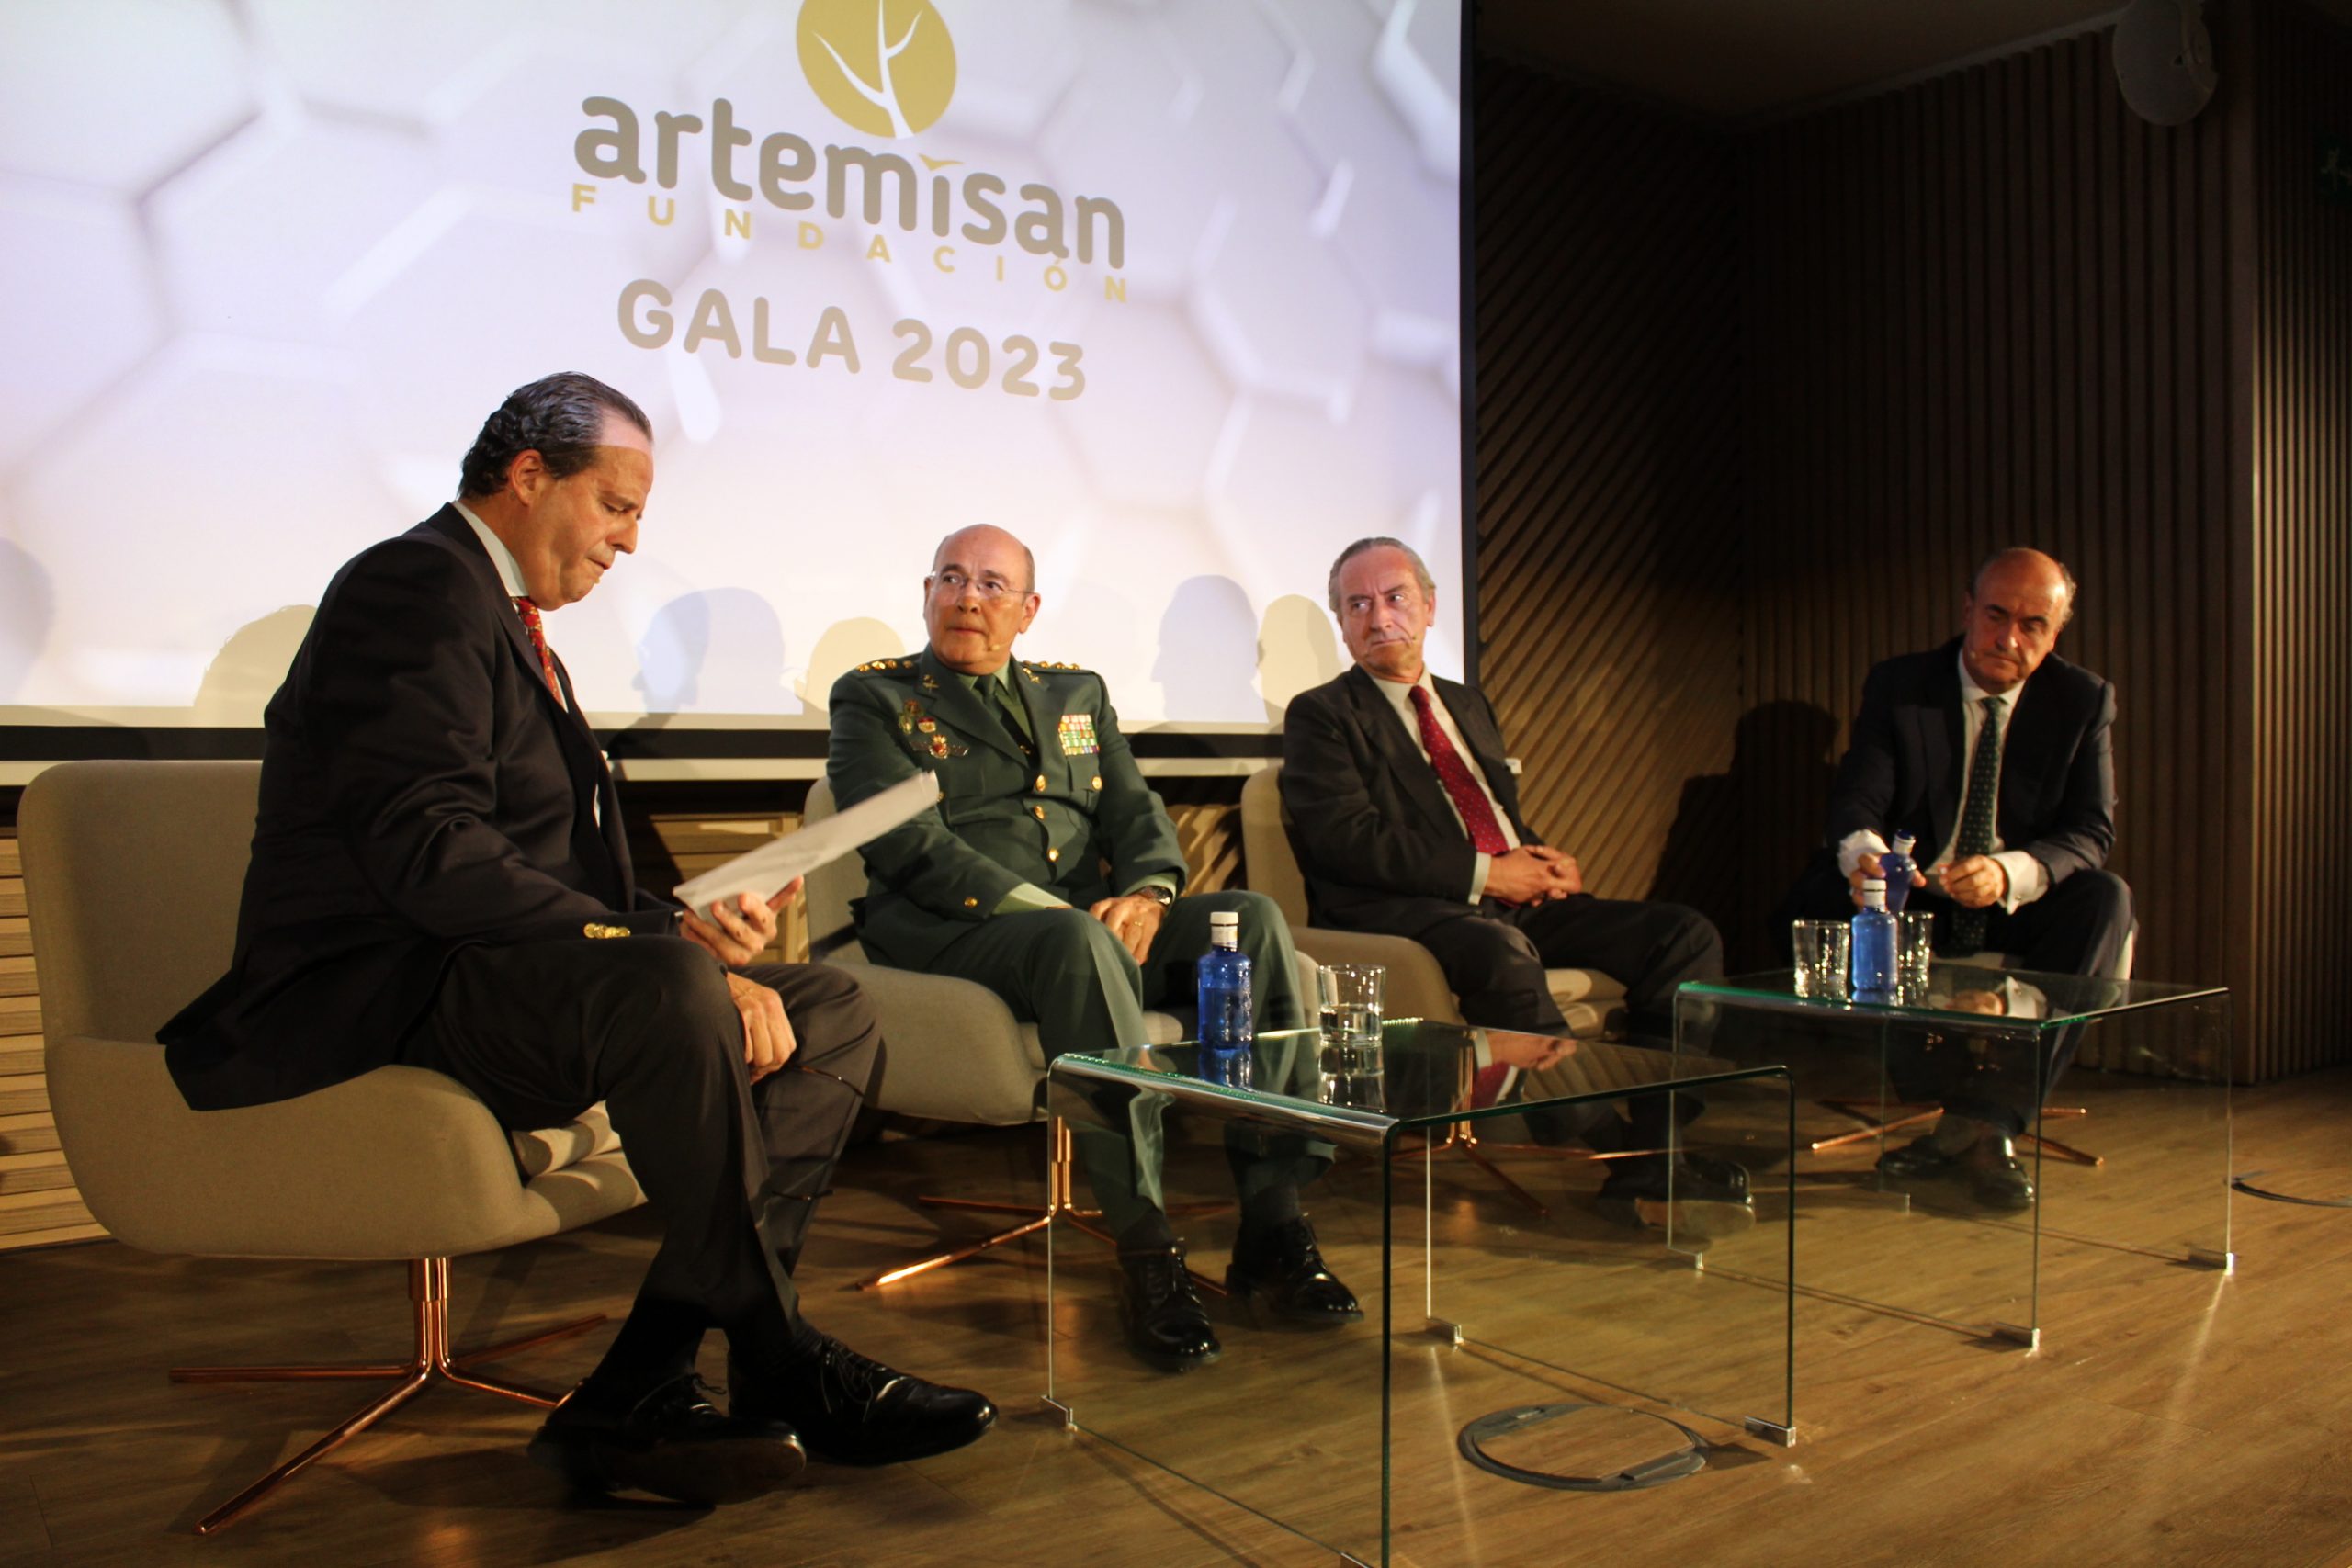 Mesa de Defensa Jurídica de la Gala de Fundación Artemisan 2023, con la participación de Diego Pérez de los Cobos, Luis Ibáñez y Jorge Bernad.